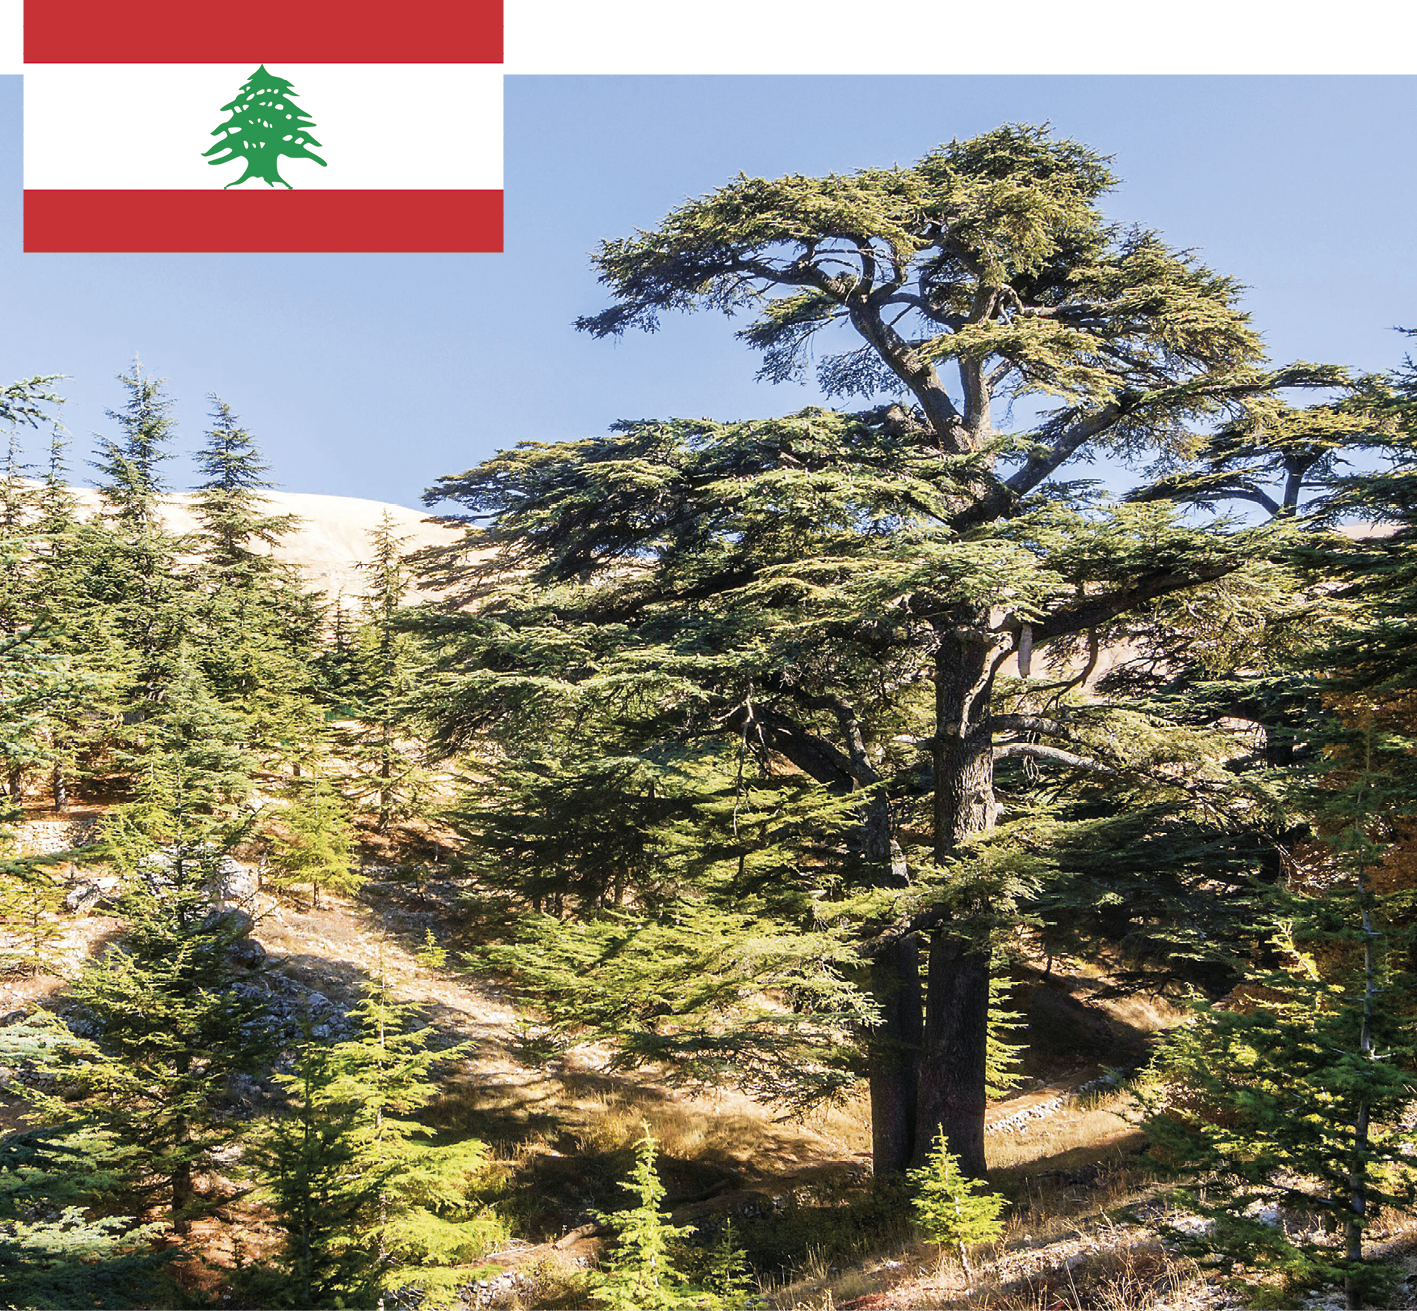 Fotomontagem. Na imagem principal, fotografia de uma floresta com diversas árvores. Em primeiro plano, uma árvore de troncos médios e muitos galhos com folhas verdes, que formam diversos patamares. Ao fundo, céu azul. No canto superior esquerdo, sobreposta à fotografia, uma ilustração representando a bandeira do Líbano. A bandeira é composta por três faixas horizontais, sendo a superior e a inferior menores e vermelhas e a do meio maior e branca, com o desenho de uma árvore verde no centro. A árvore da bandeira apresenta características semelhantes as da árvore da fotografia.